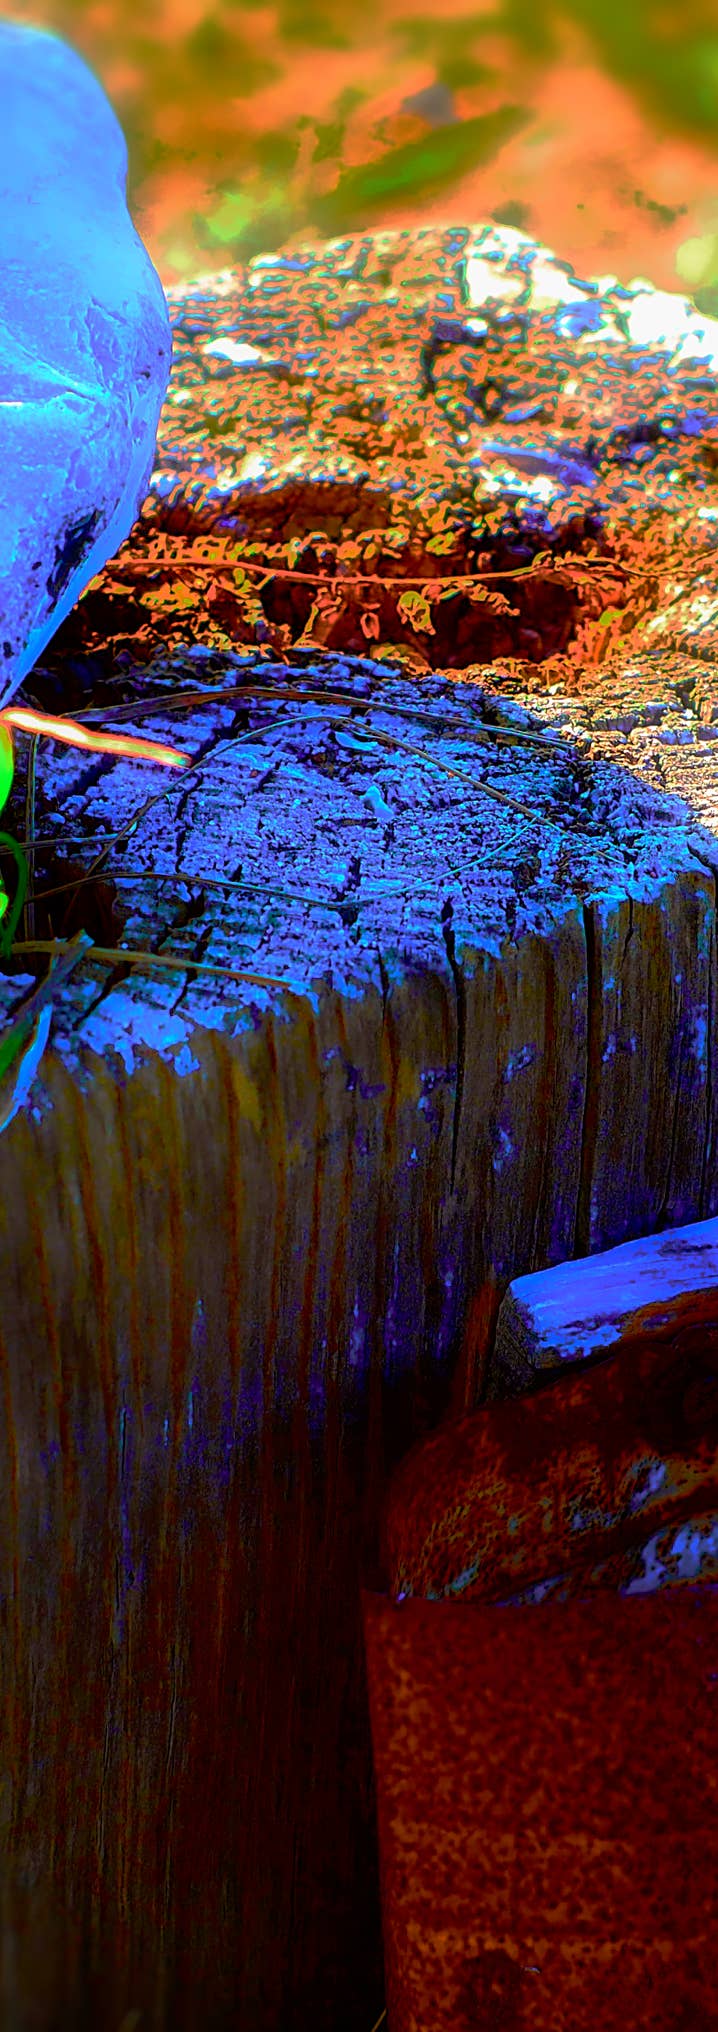 Foto von Holzstumpf mit angenagelter rostiger Blechdose als Aschenbecher